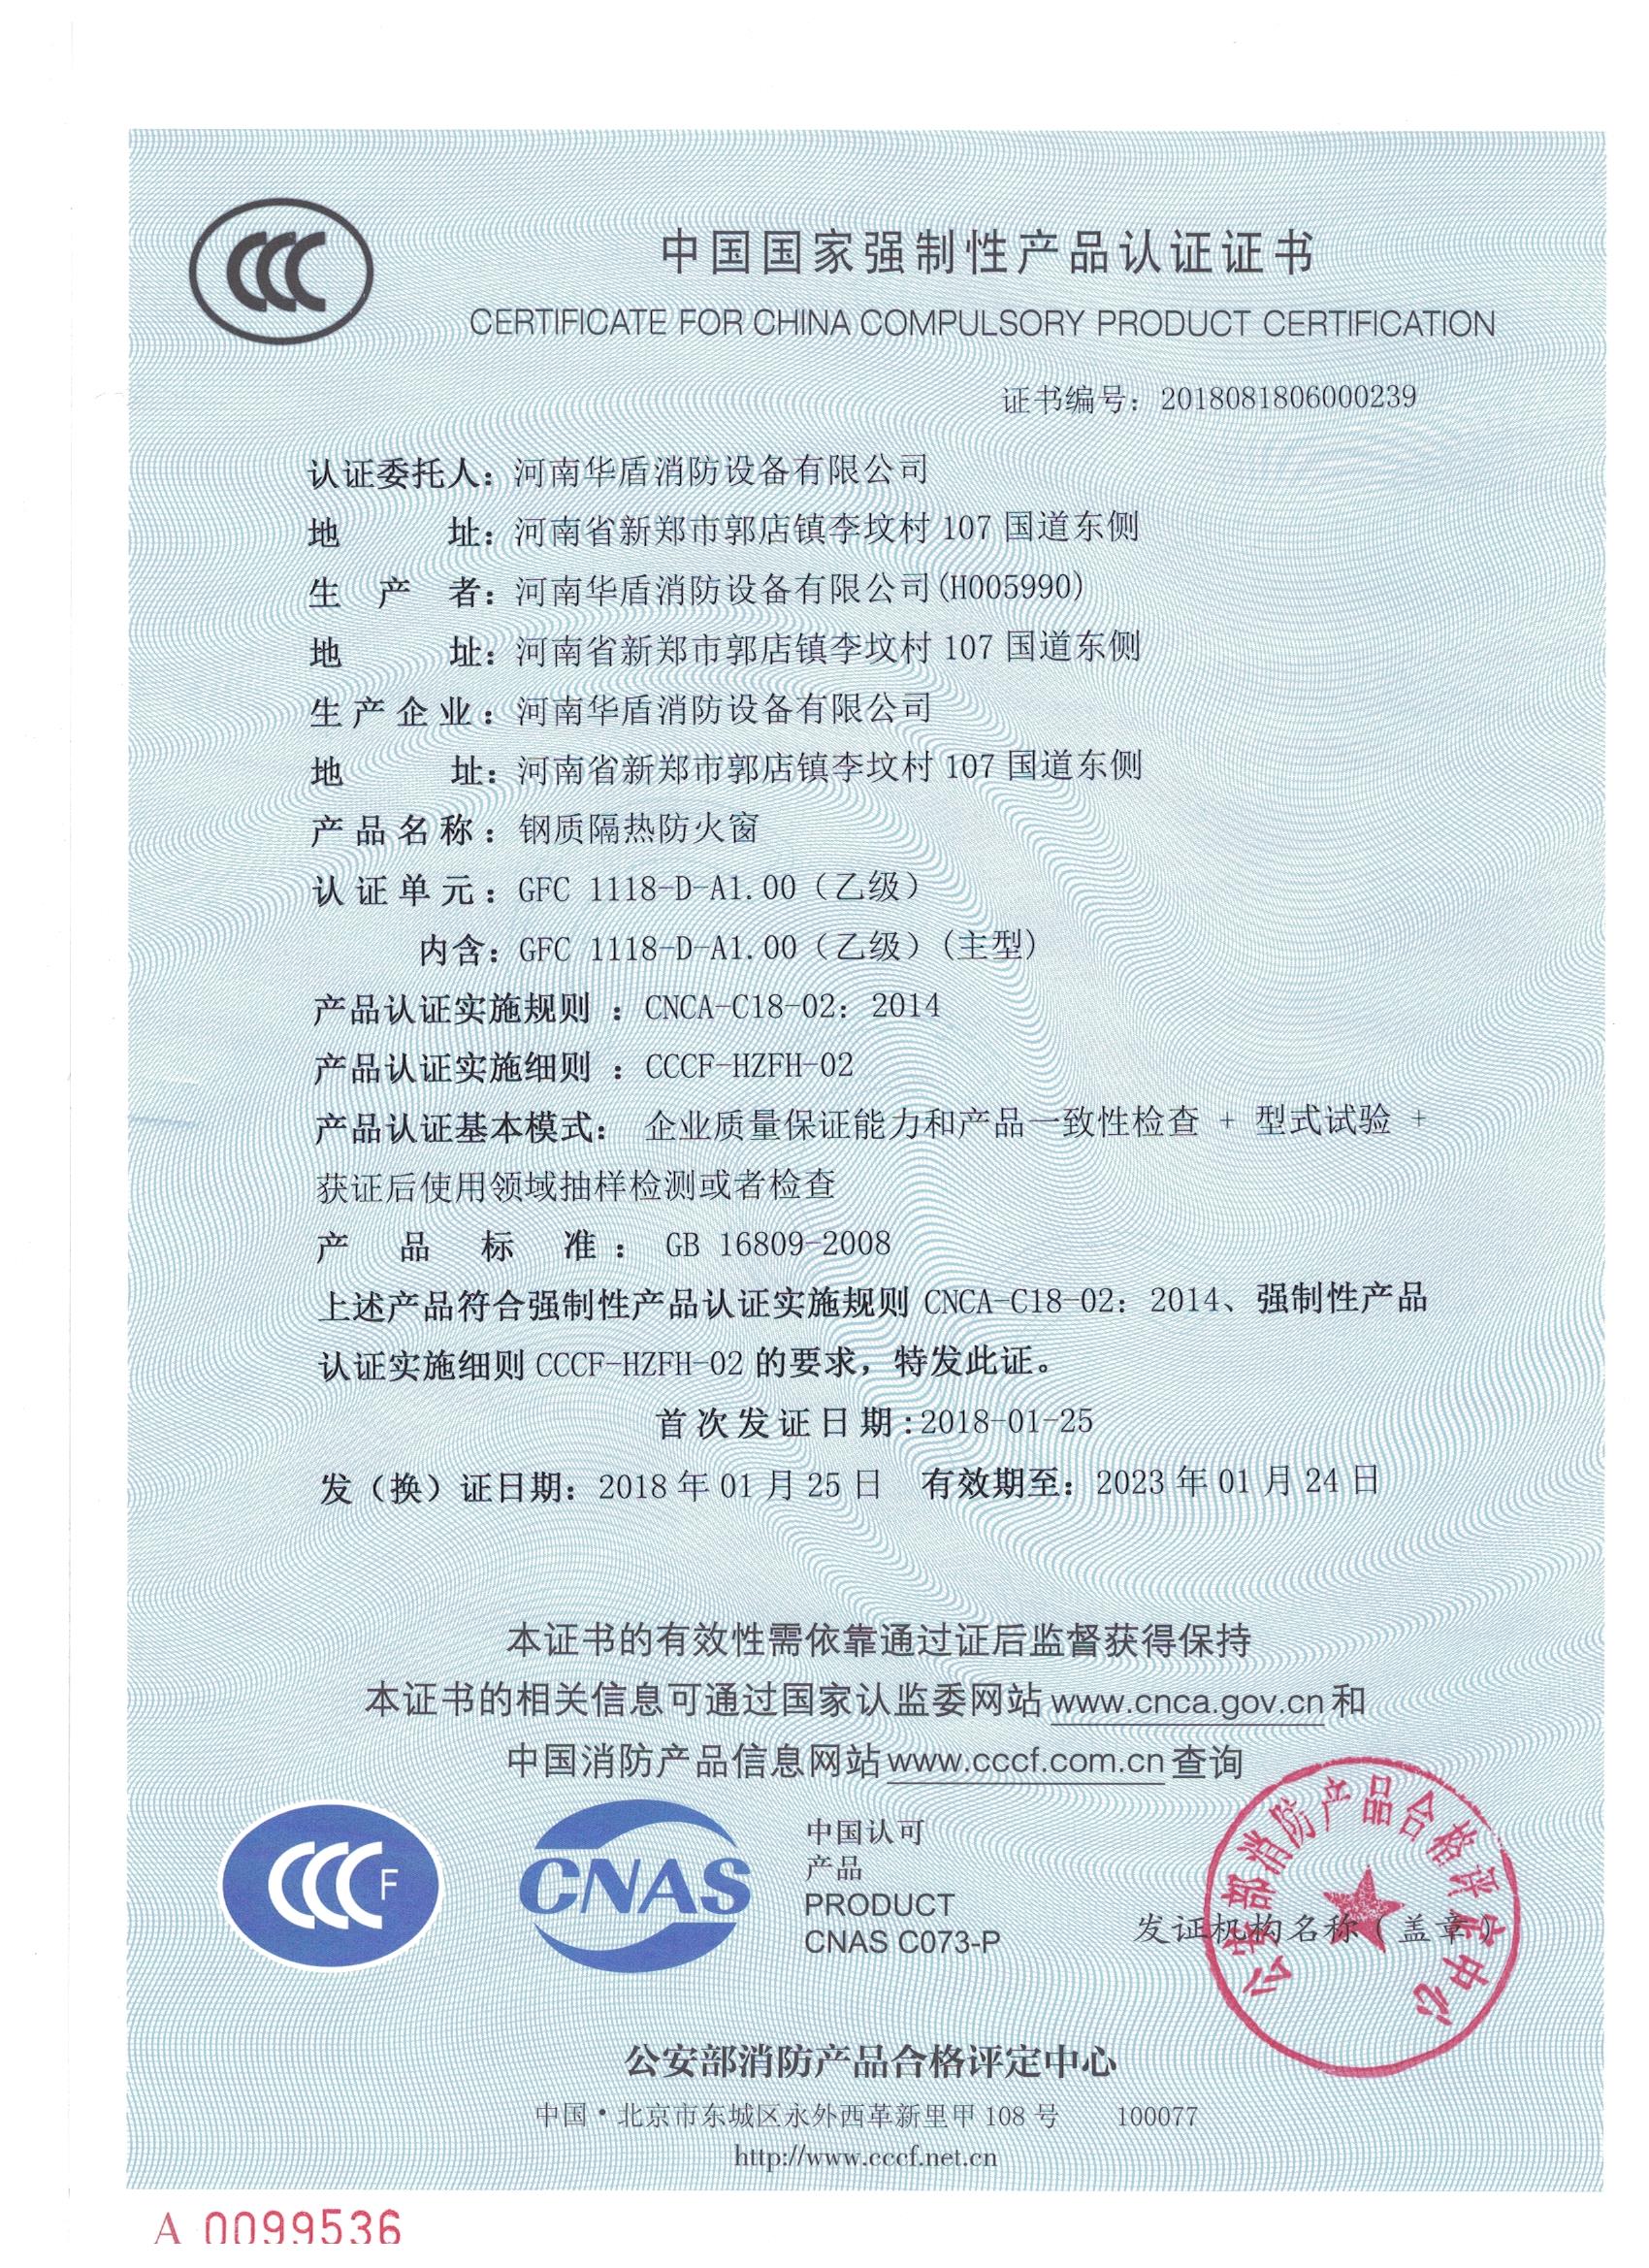 郑州隔热防火窗-3C证书/检验报告